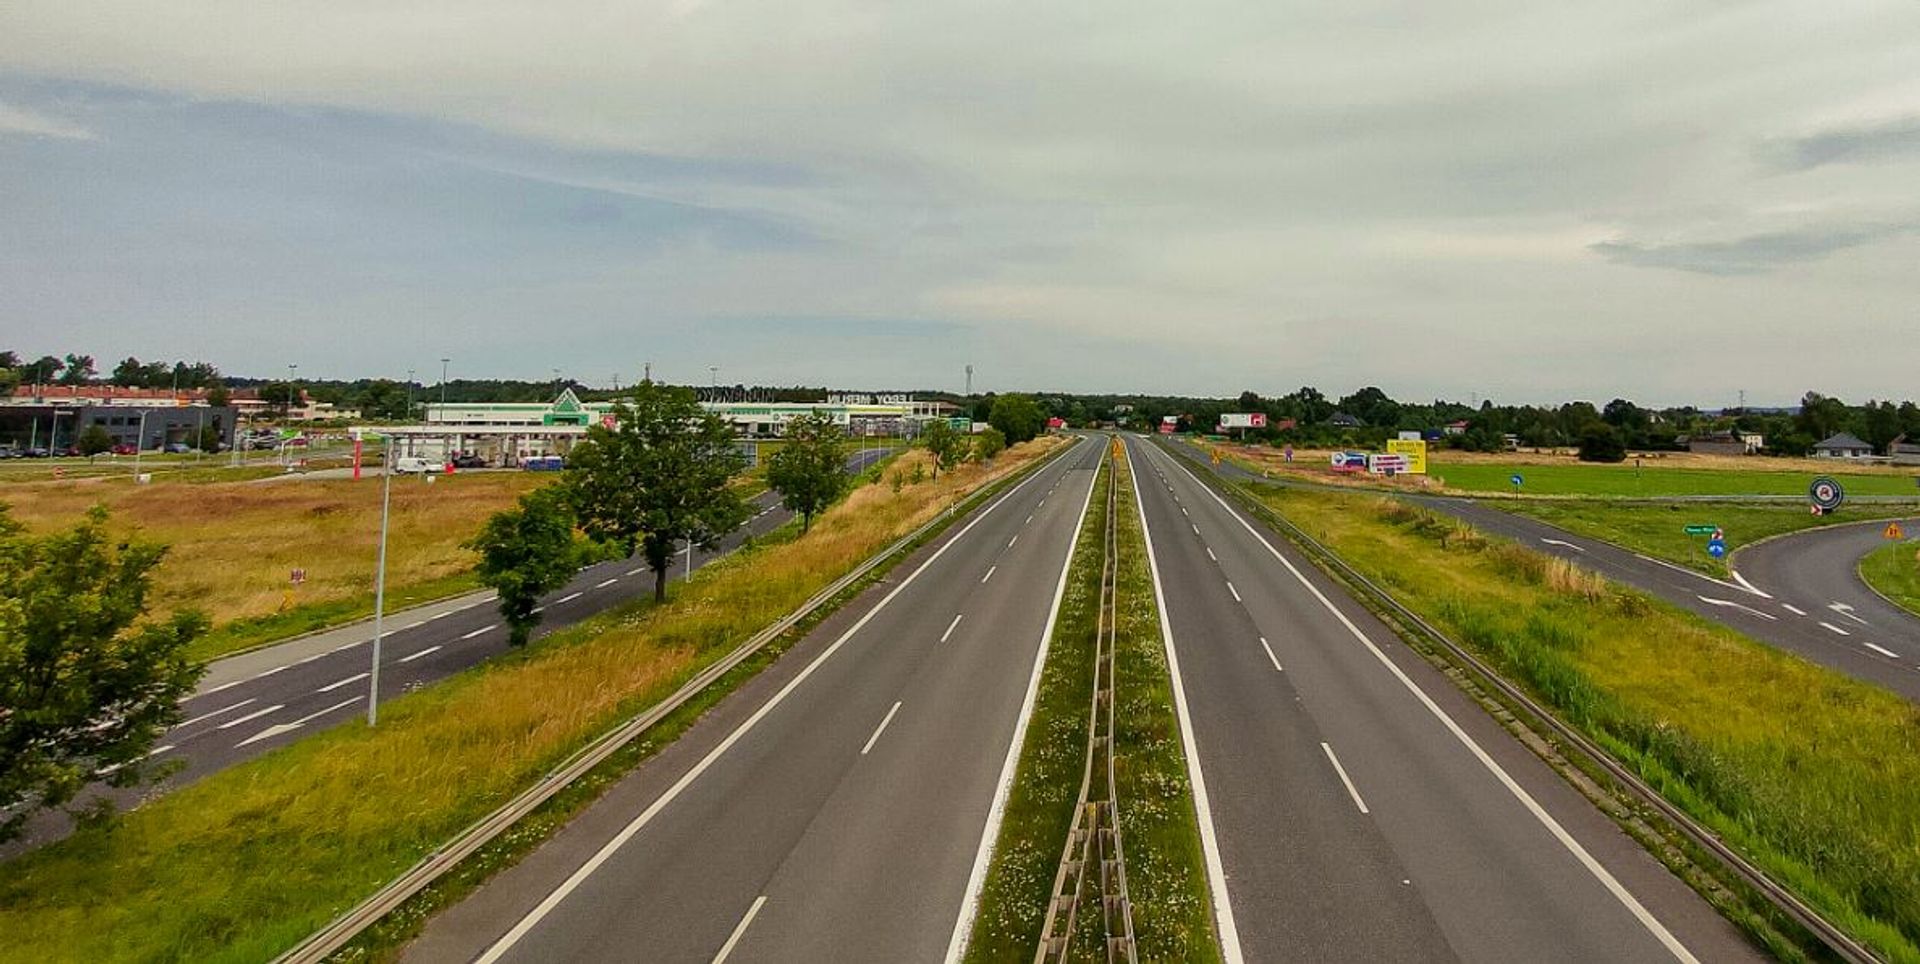 W województwie śląskim zostanie przebudowane ponad 40 kilometrów kolejnych odcinków DK91